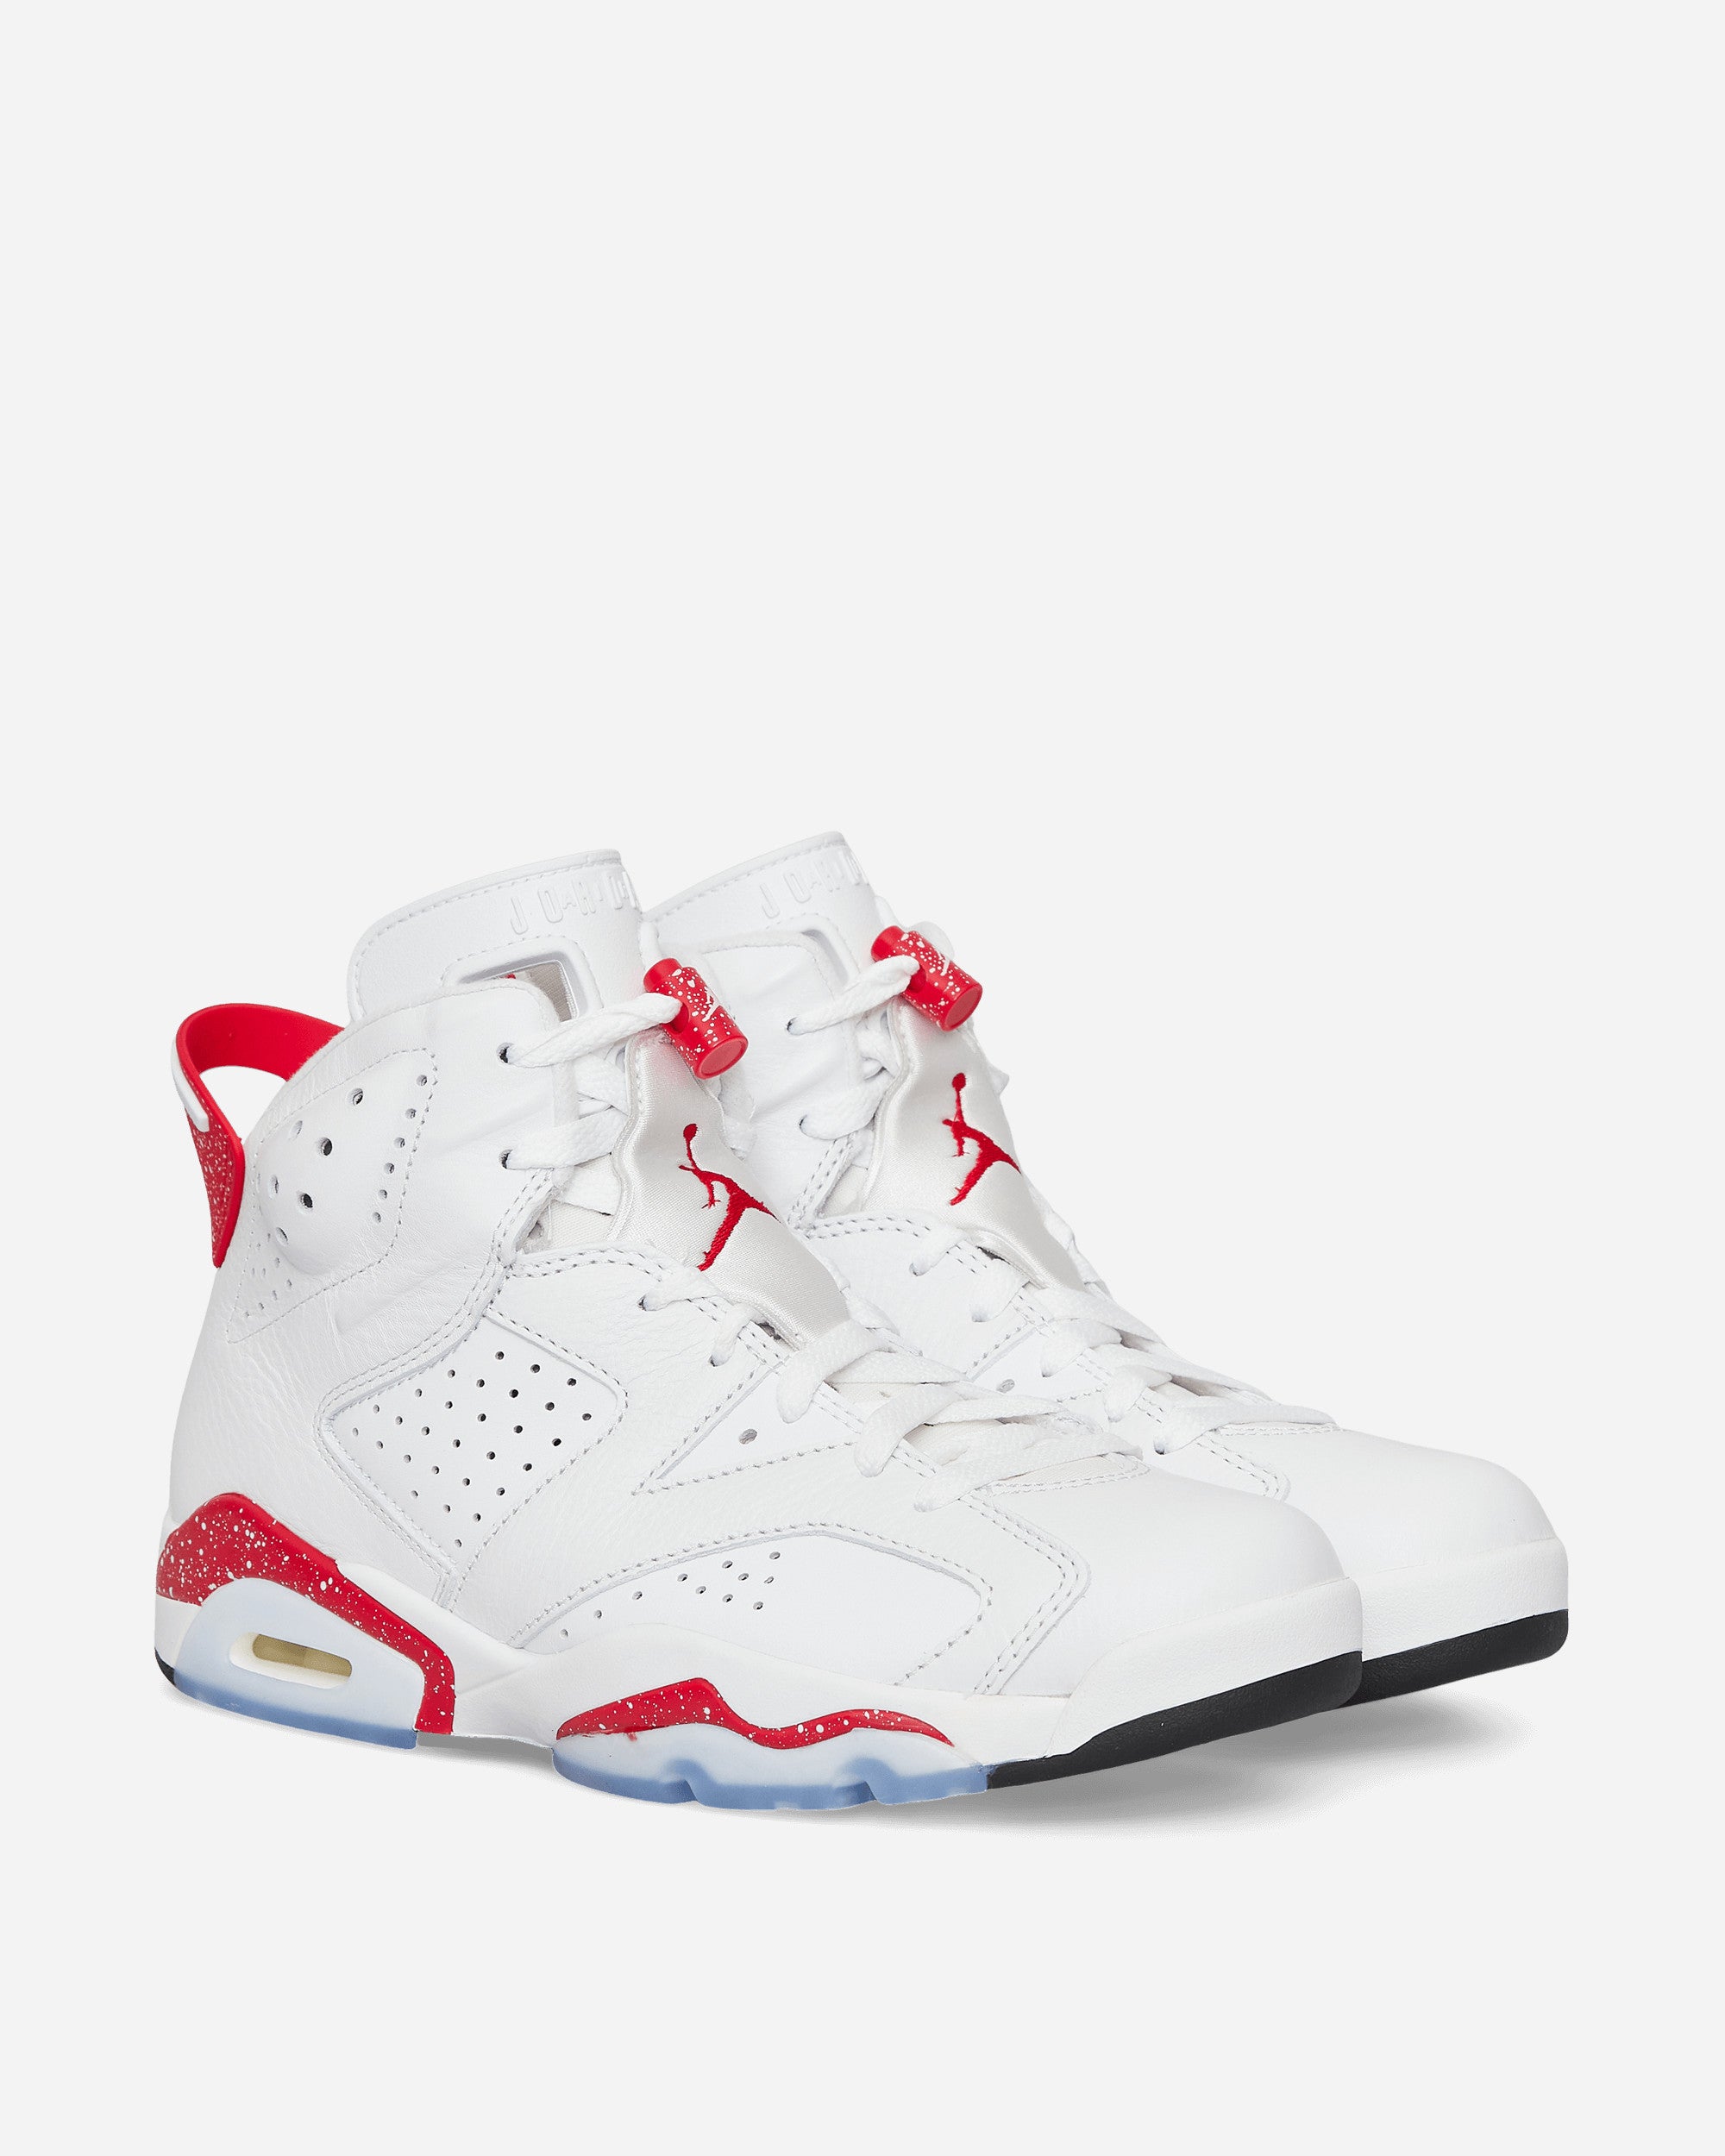 Nike Jordan Air Jordan 6 Retro White/University Red Sneakers Mid CT8529-162